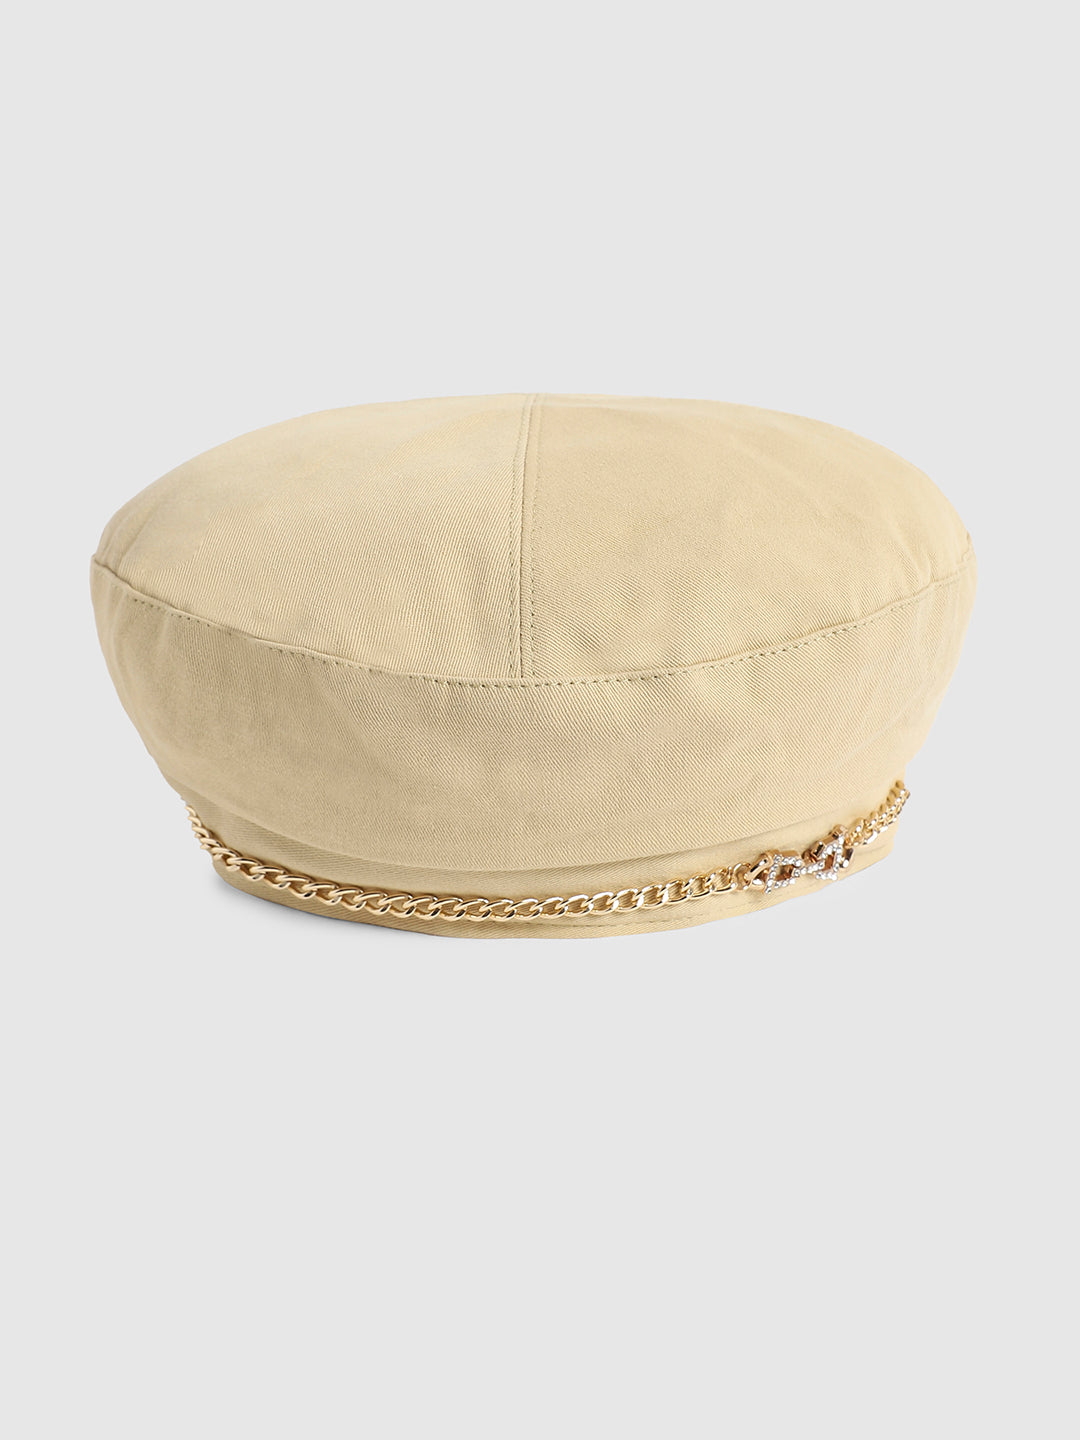 Rhinestone Chain Beret Hat - Cream